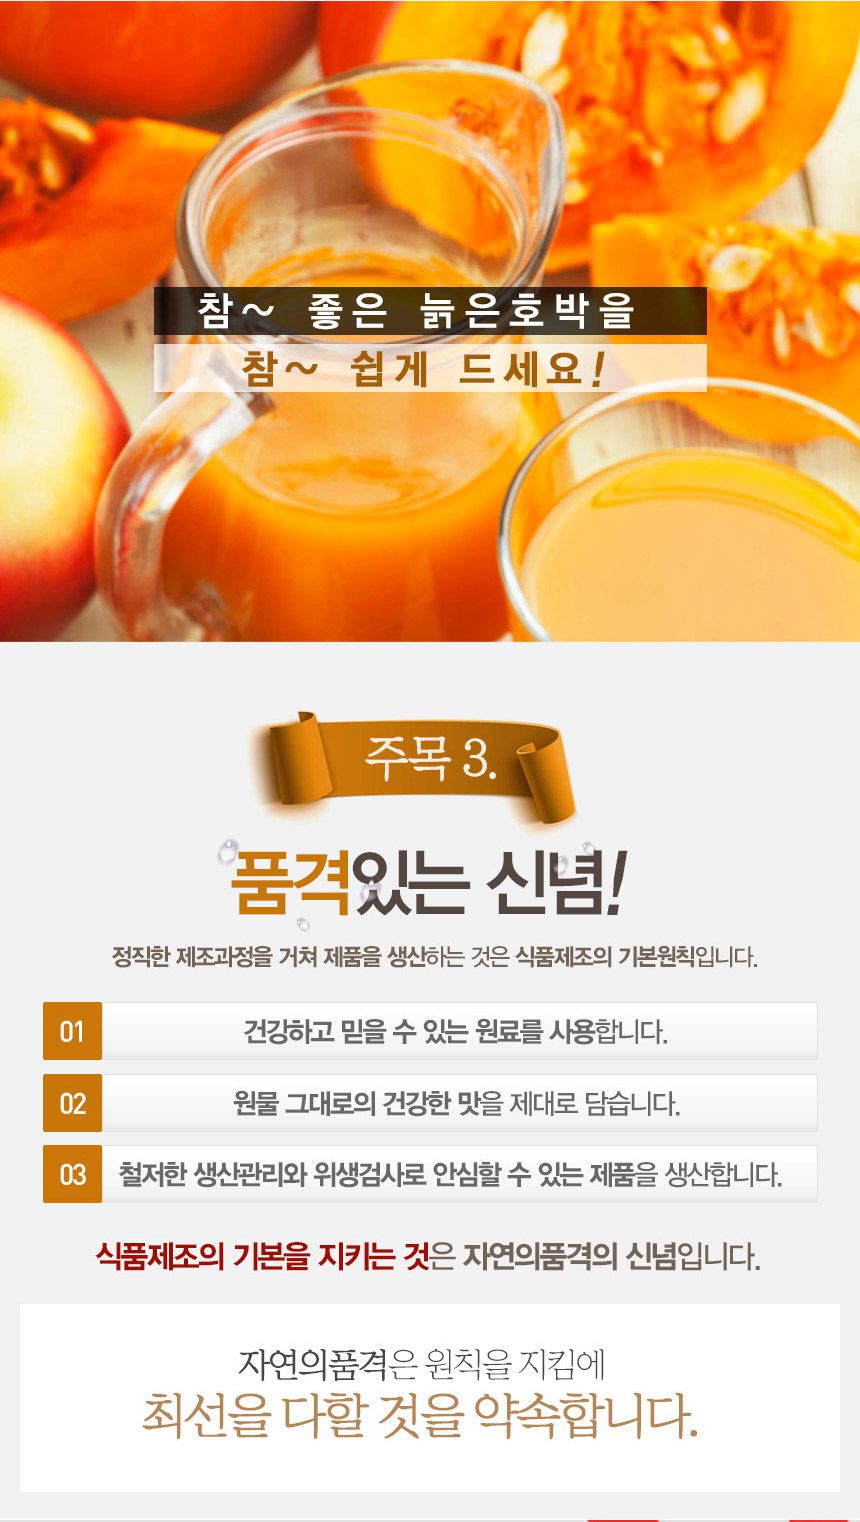 韓國食品-[GNM] 南瓜汁 90ml*30 (有效解決水腫、便秘)